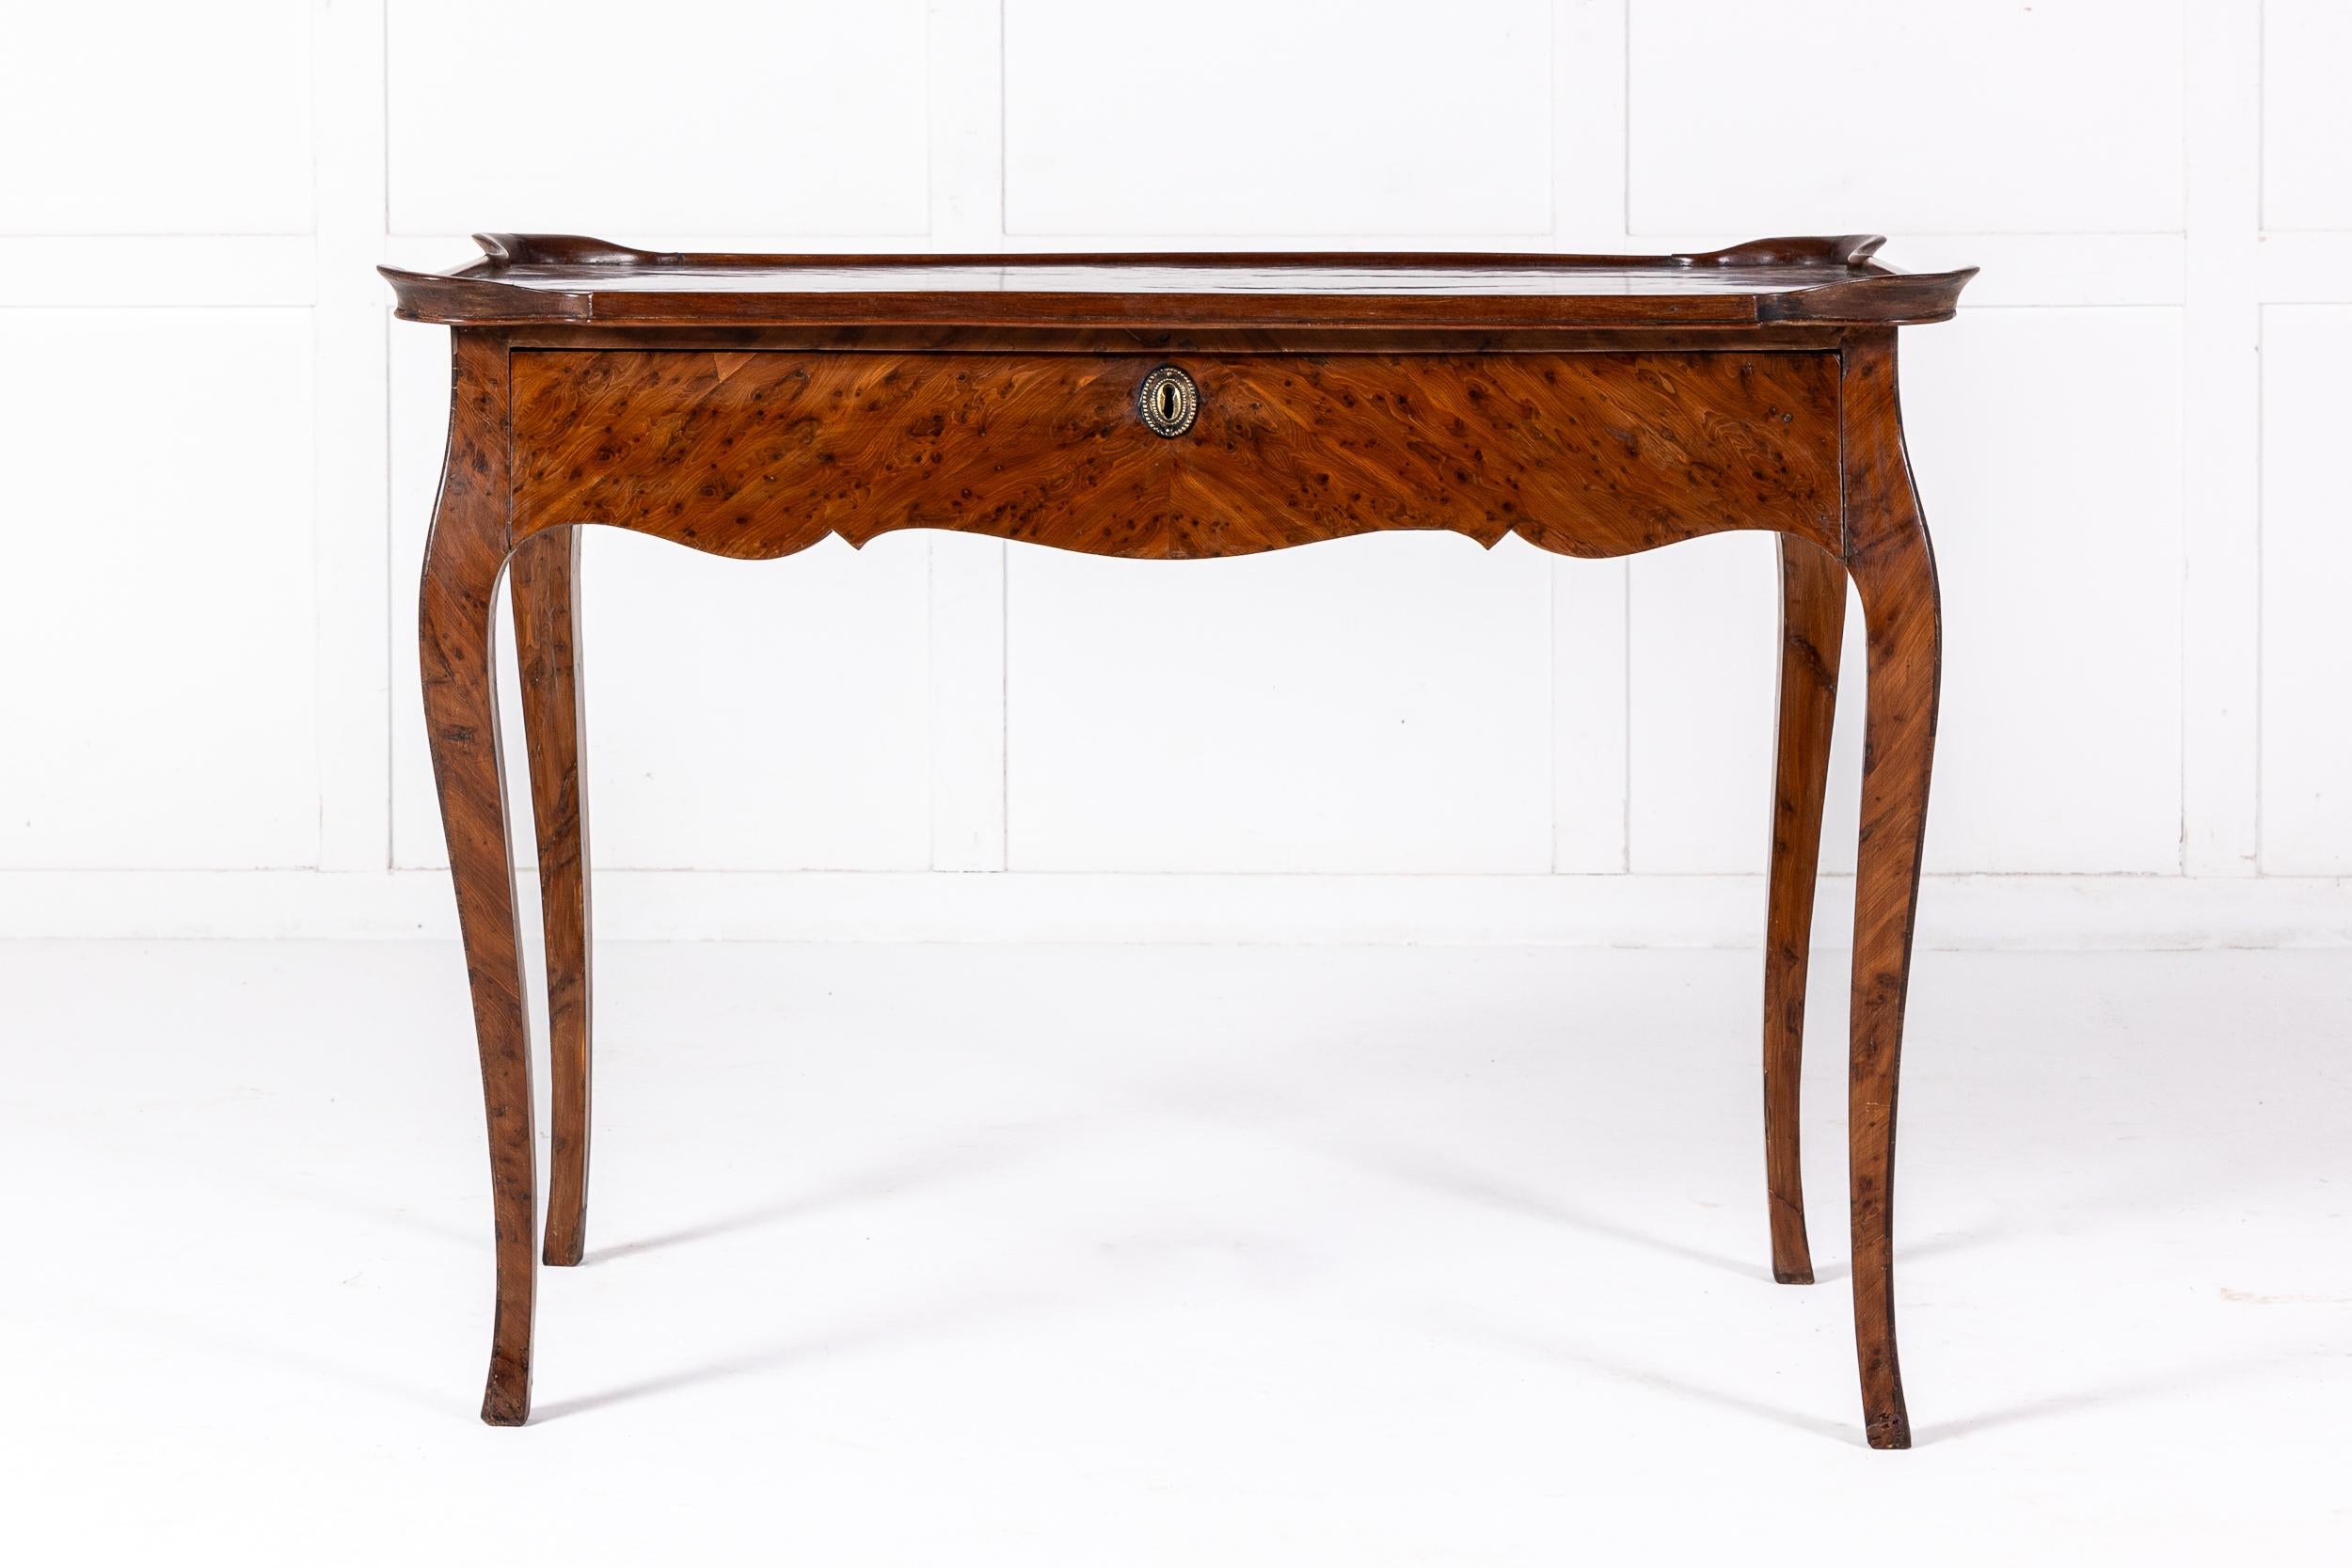 Eine schöne Französisch Louis XVI Zentrum oder Beistelltisch in Burr Elm mit Moulded Top.

Dieser Tisch hat eine reizvolle Form mit einem geformten Fries und eleganten Cabriole-Beinen. Der Deckel ist geformt und mit vier Vertiefungen versehen, eine